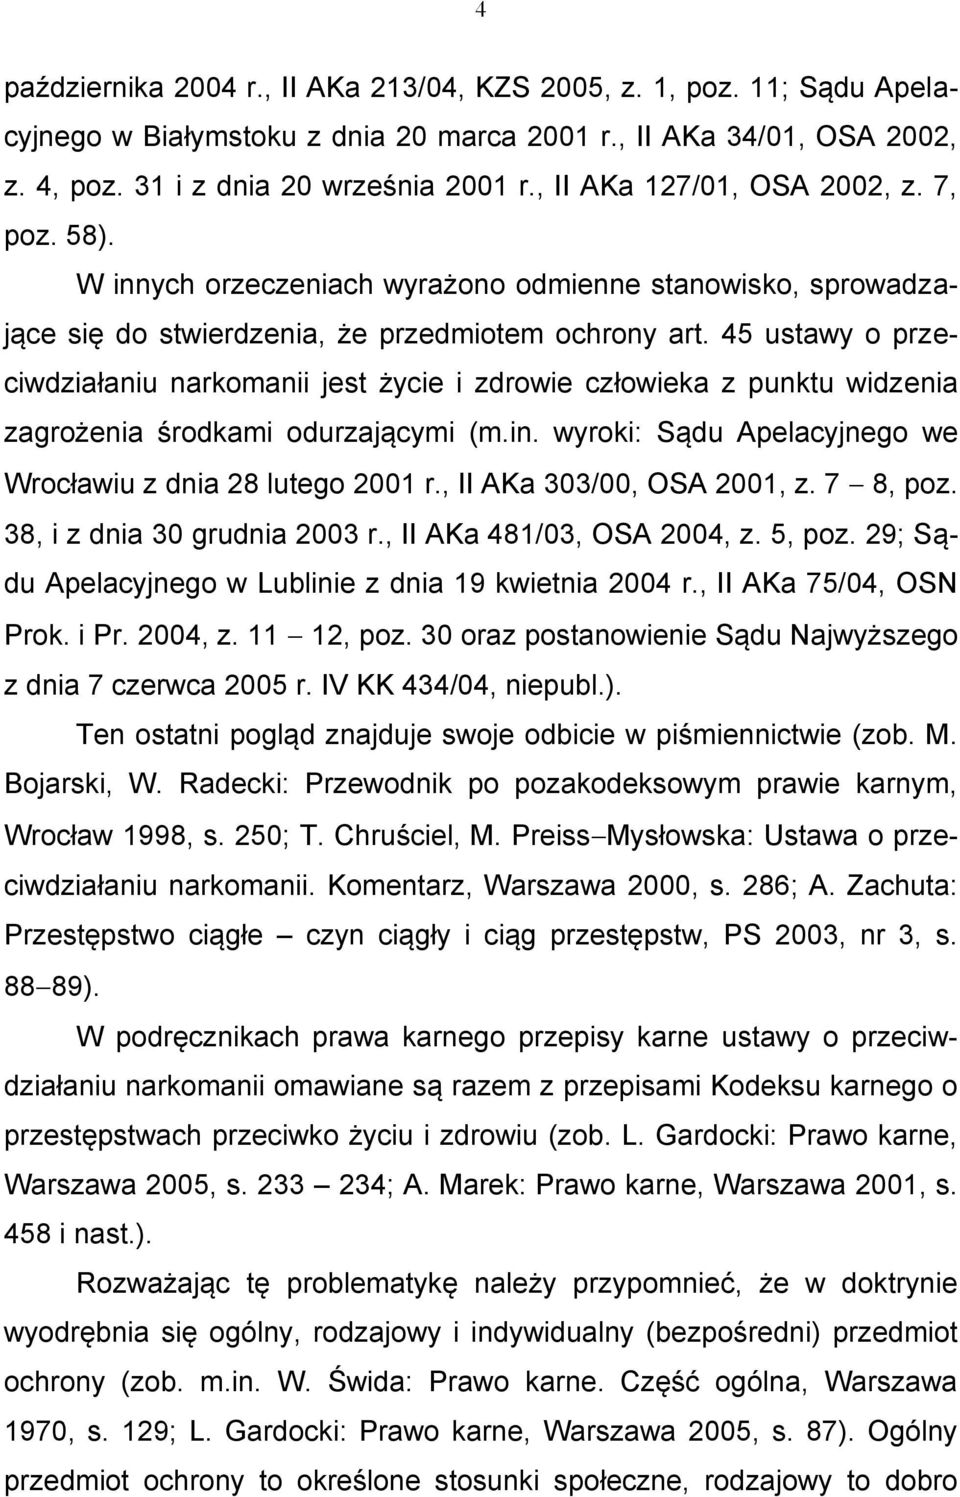 45 ustawy o przeciwdziałaniu narkomanii jest życie i zdrowie człowieka z punktu widzenia zagrożenia środkami odurzającymi (m.in. wyroki: Sądu Apelacyjnego we Wrocławiu z dnia 28 lutego 2001 r.